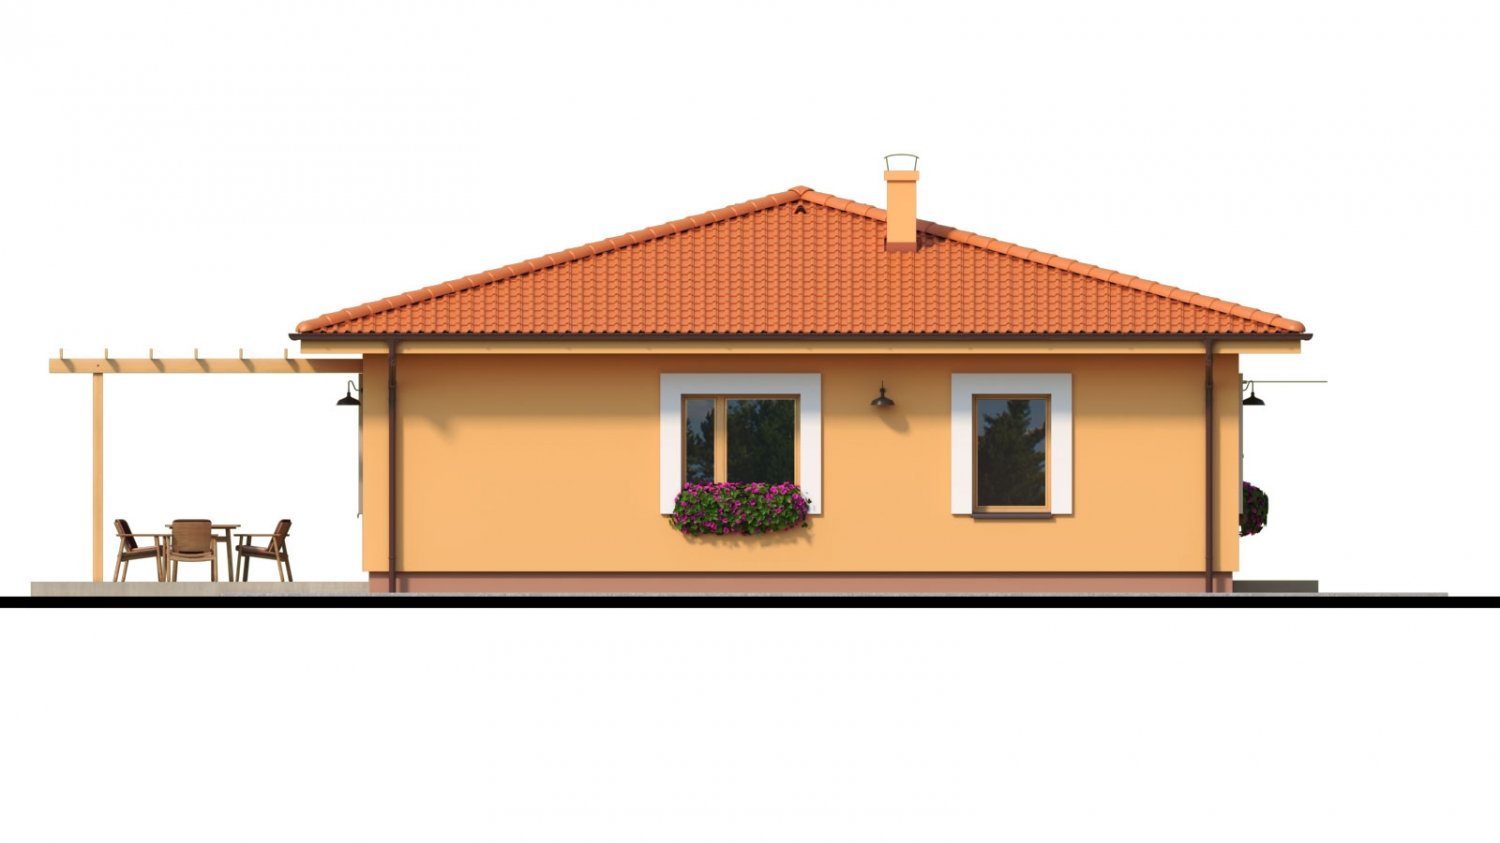 Zrkadlový pohľad 4. - Moderní zděný bungalov s valbovou střechou a oddělenou denní a noční částí, s možností zrealizovat plochou střechu.